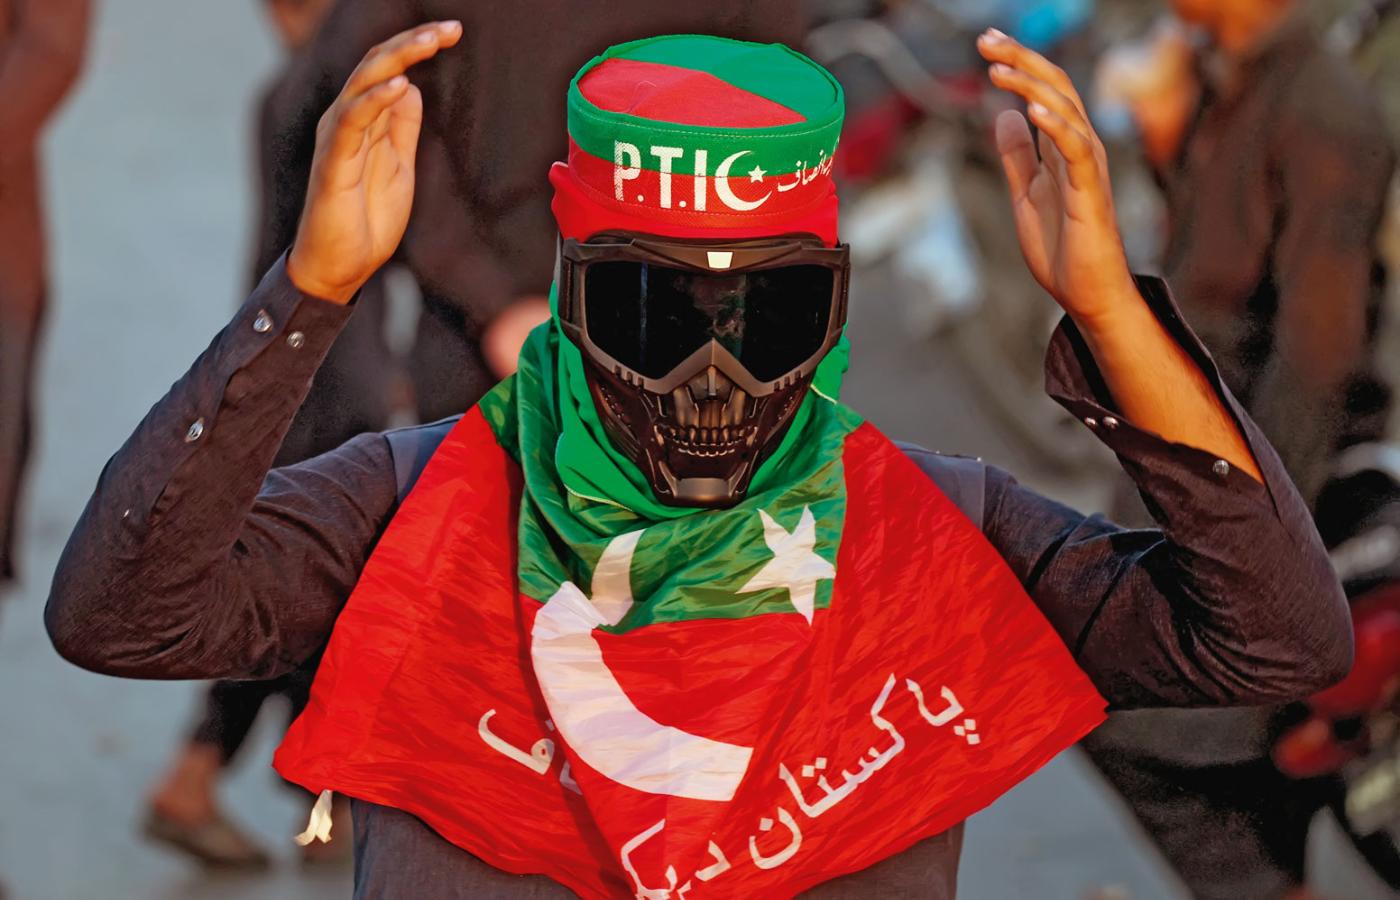 PTI oskarża władze o liczne fałszerstwa wyborcze, zakwestionowało rezultaty w kilkudziesięciu okręgach.